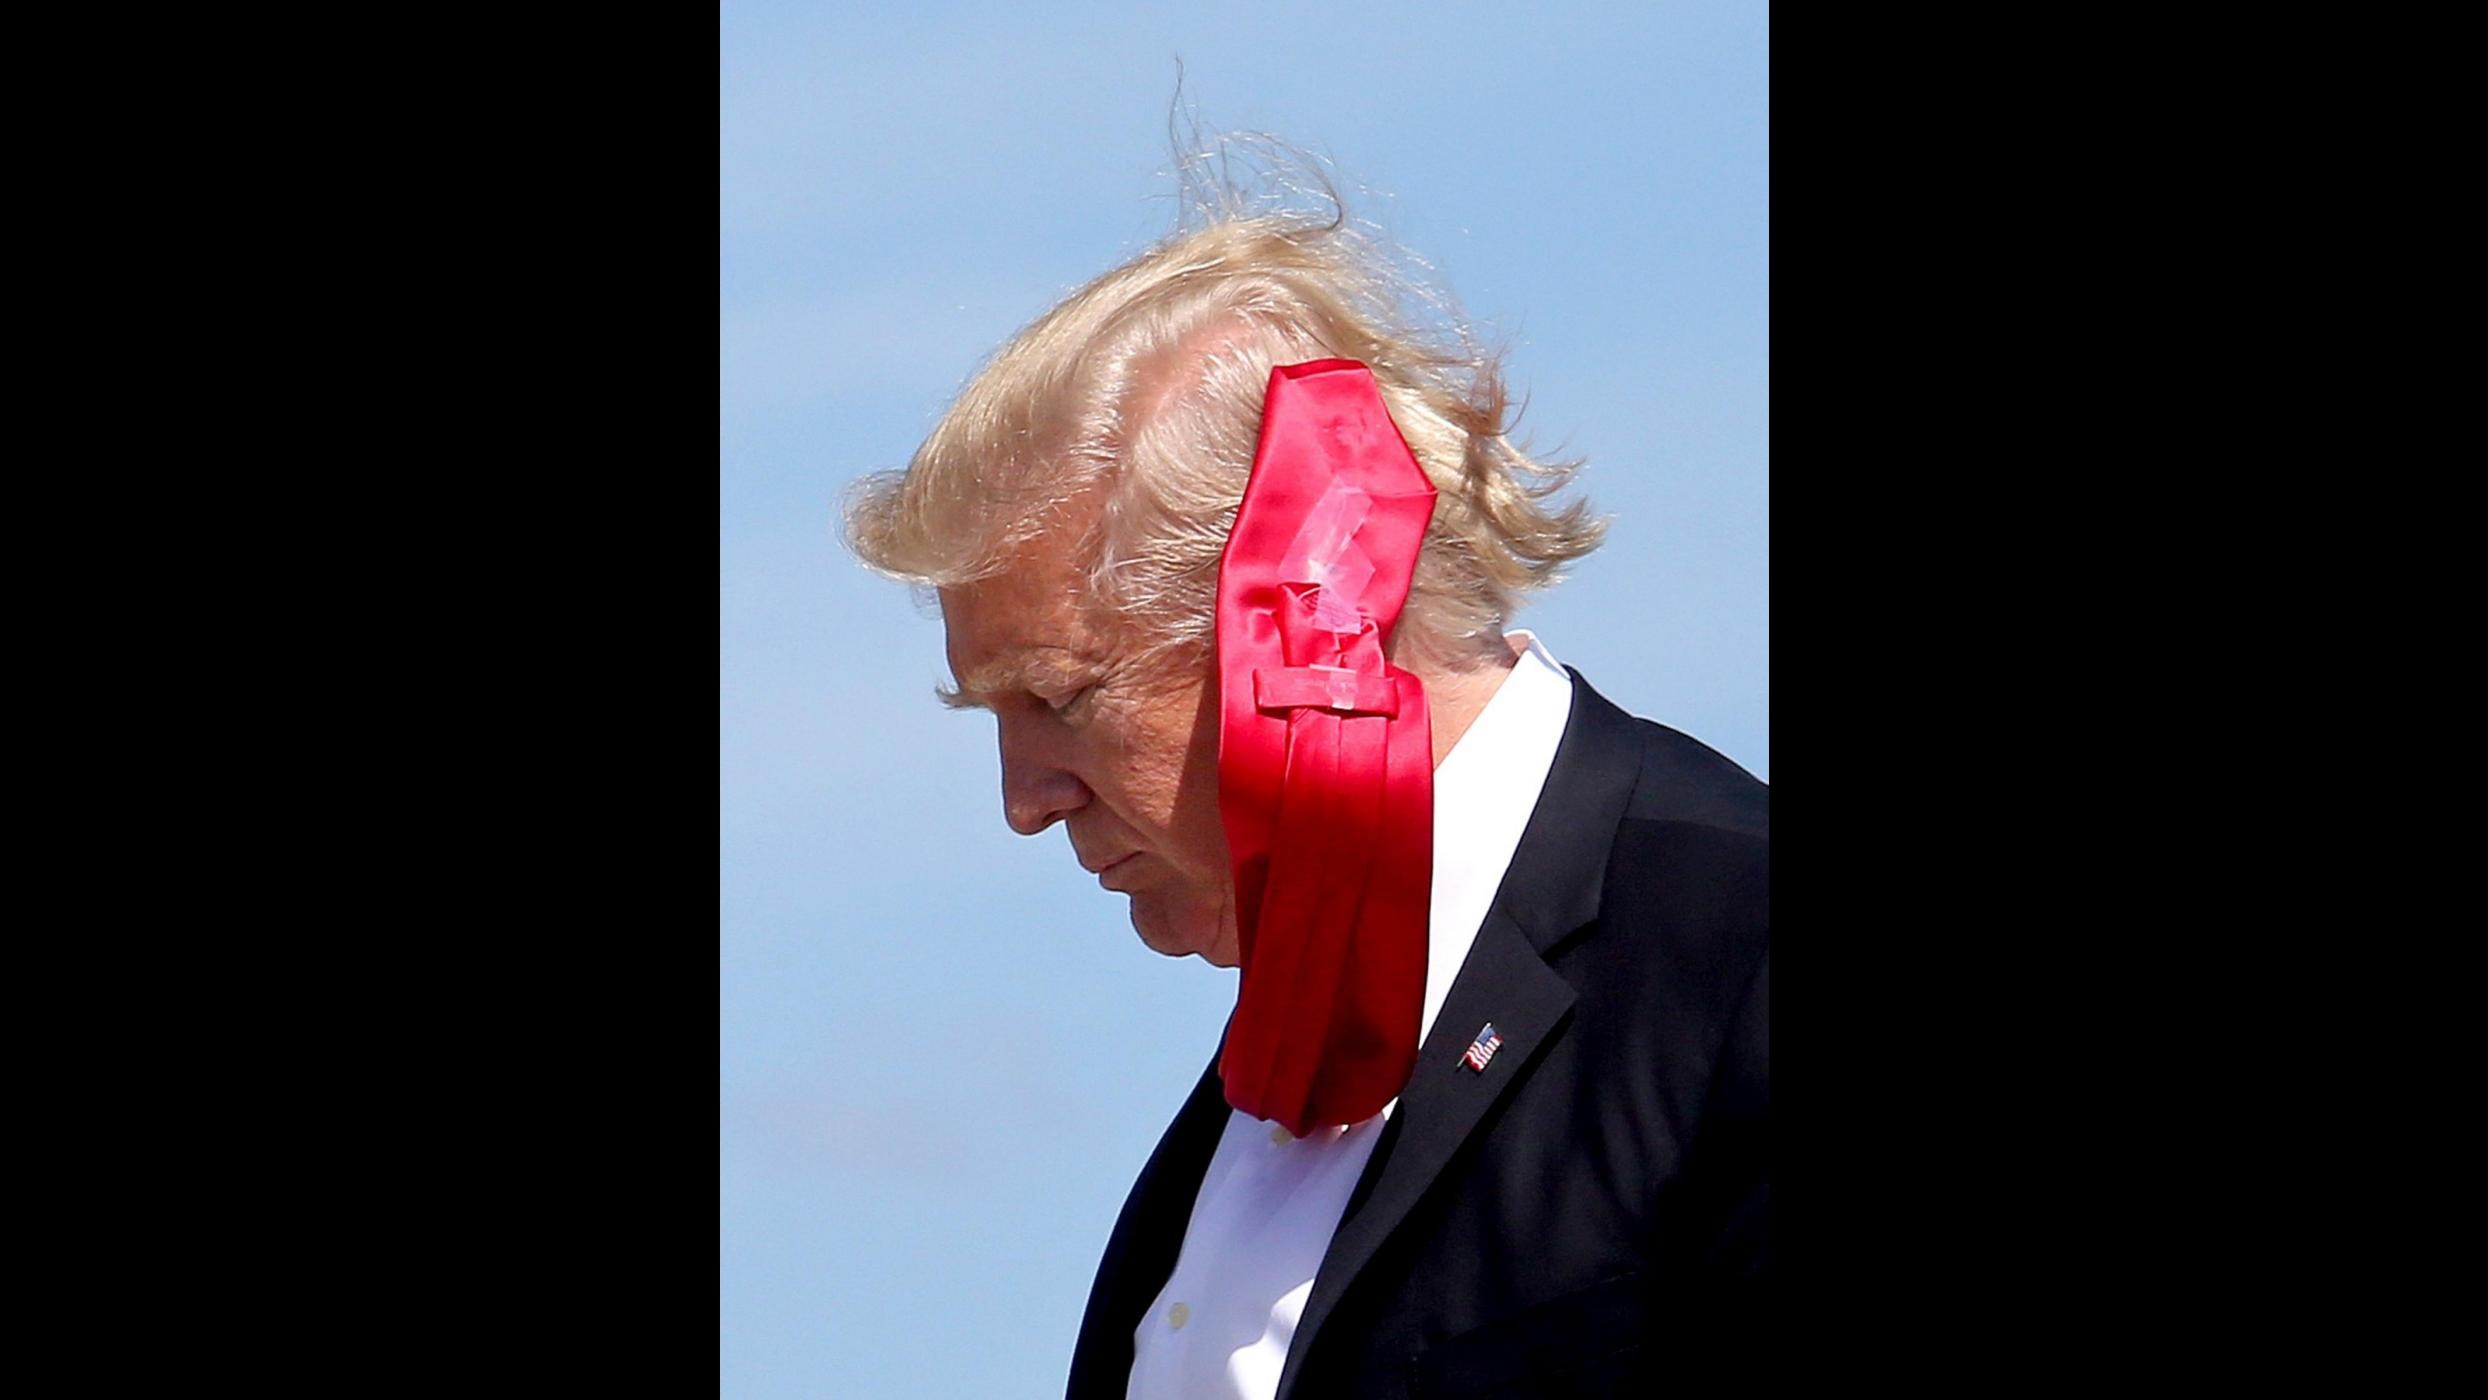 Vento a mille, cravatta indomabile per Trump a Orlando